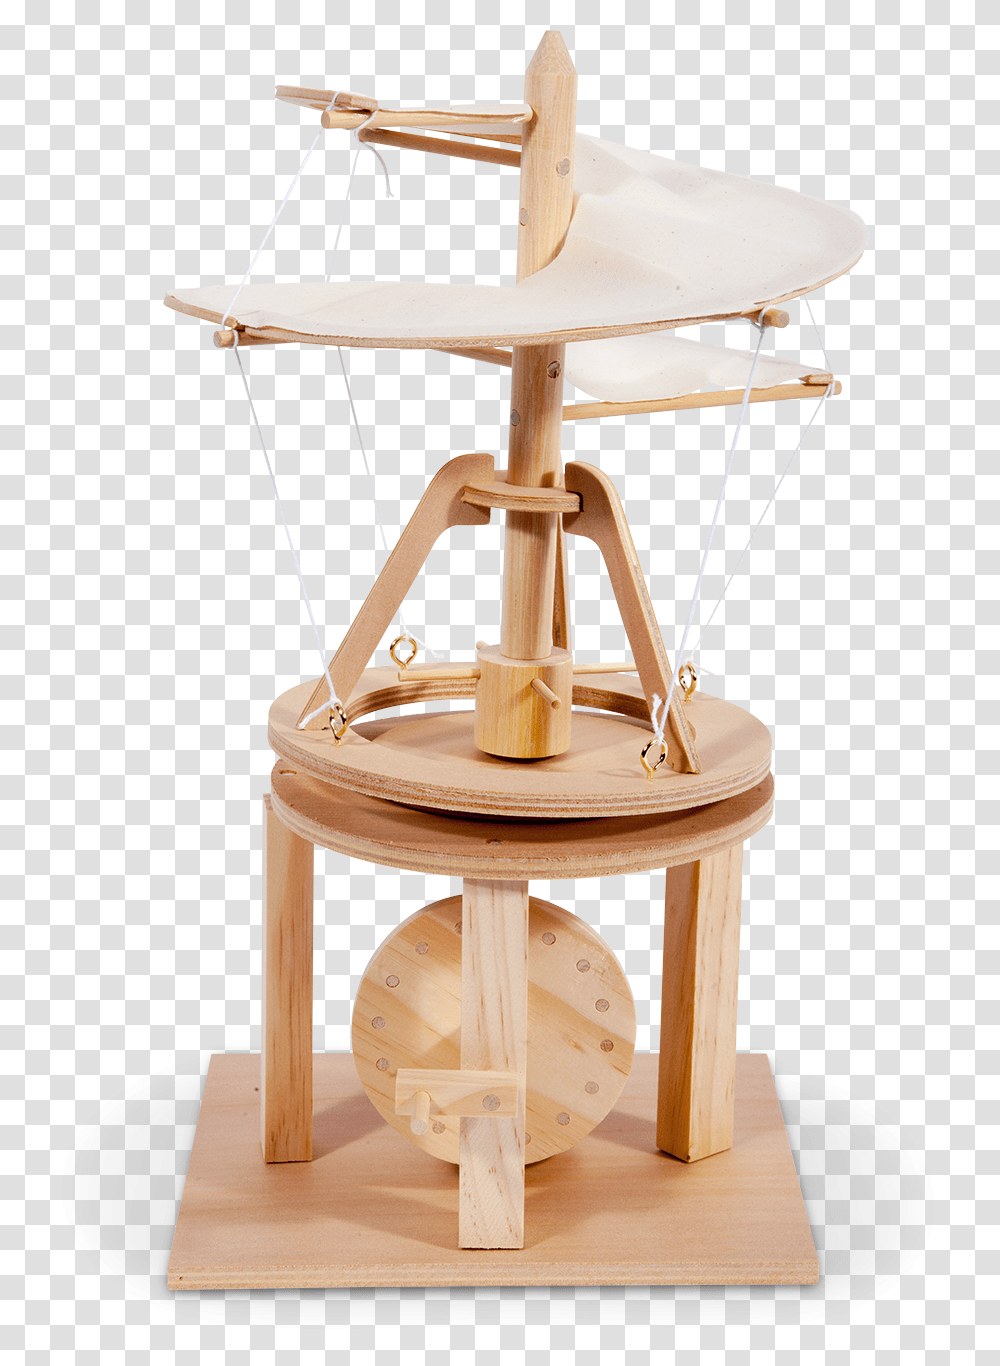 Leonardo Da Vinci Helicopter Leonardo Da Vinci Project Helicopter, Furniture, Wood, Plywood, Tabletop Transparent Png